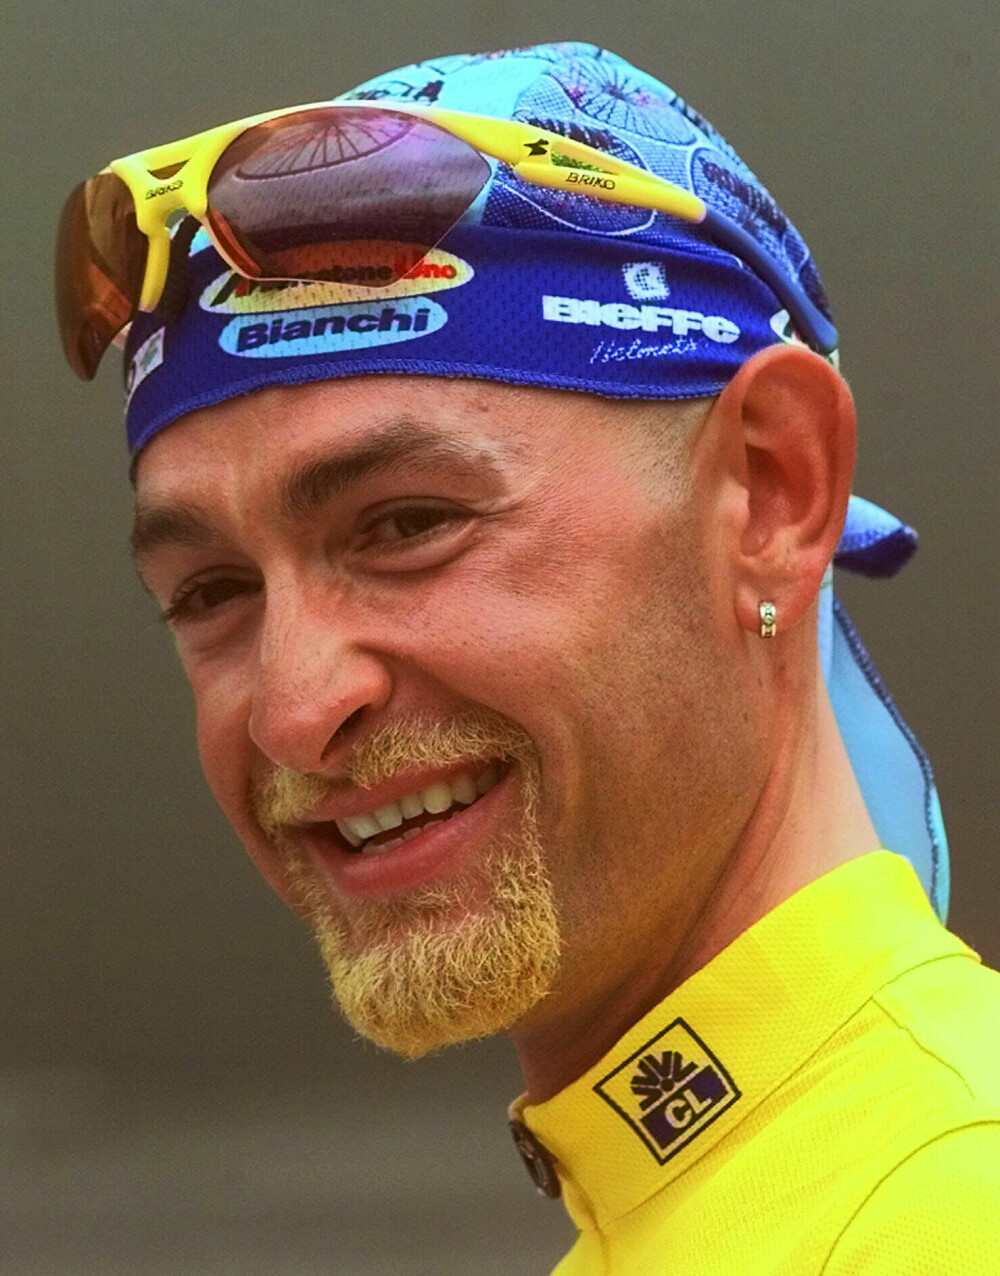 <b>PÅ TOPP:</b> Piraten utstrålte en nesten umenneskelig styrke i 1998 da han både vant Giro d'Italia og Tour de France. Det viste seg at styrken ikke bare var nesten umenneskelig. Den var produkt av juks.